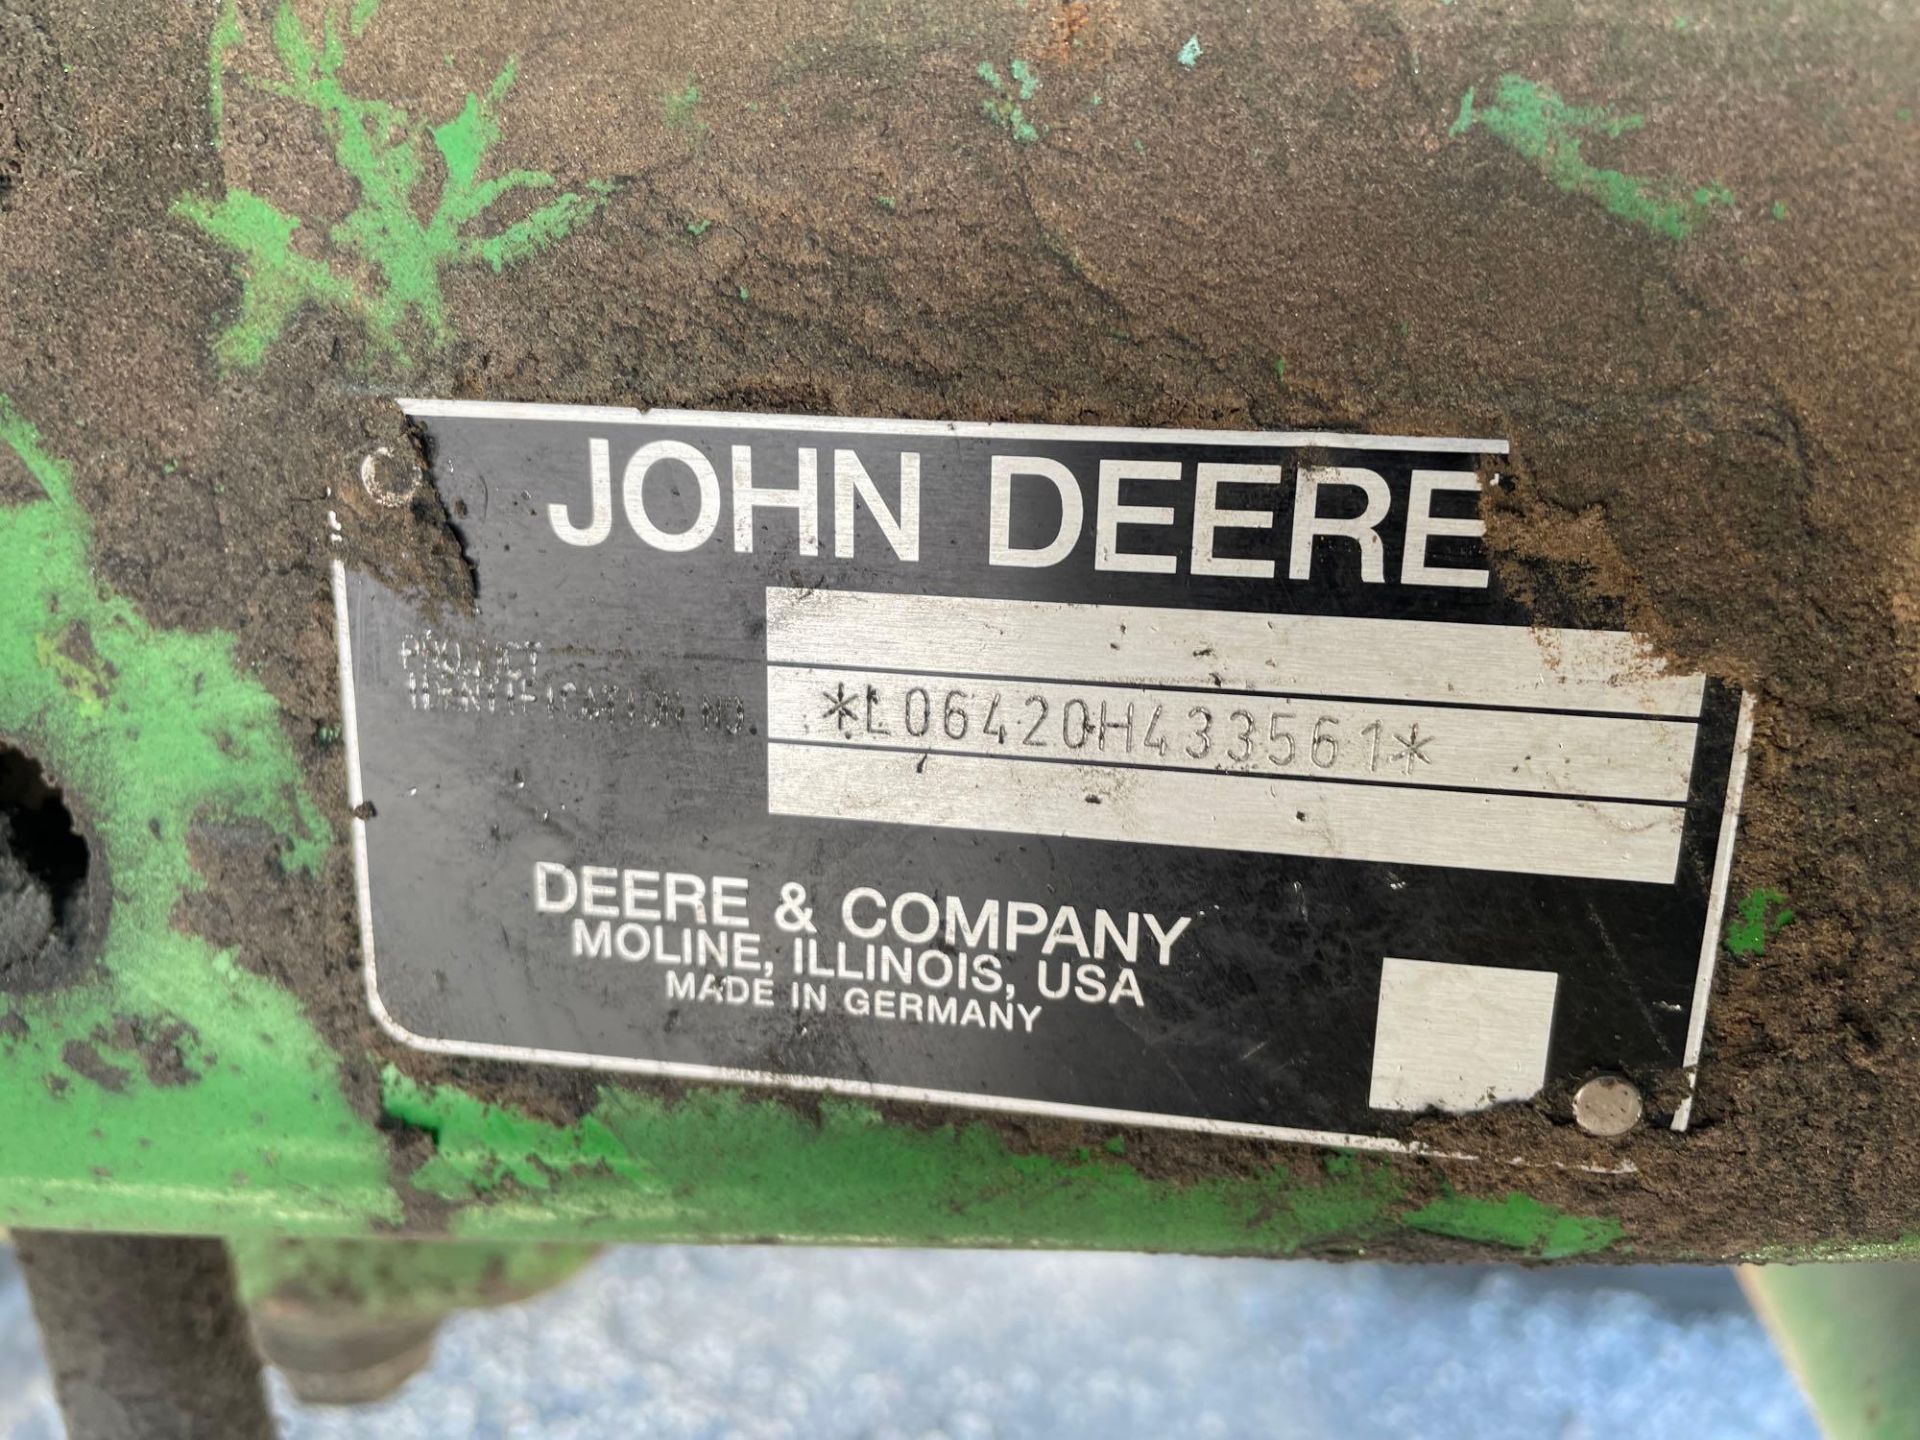 2004 John Deere 6420 Tractor Mower - Image 5 of 25